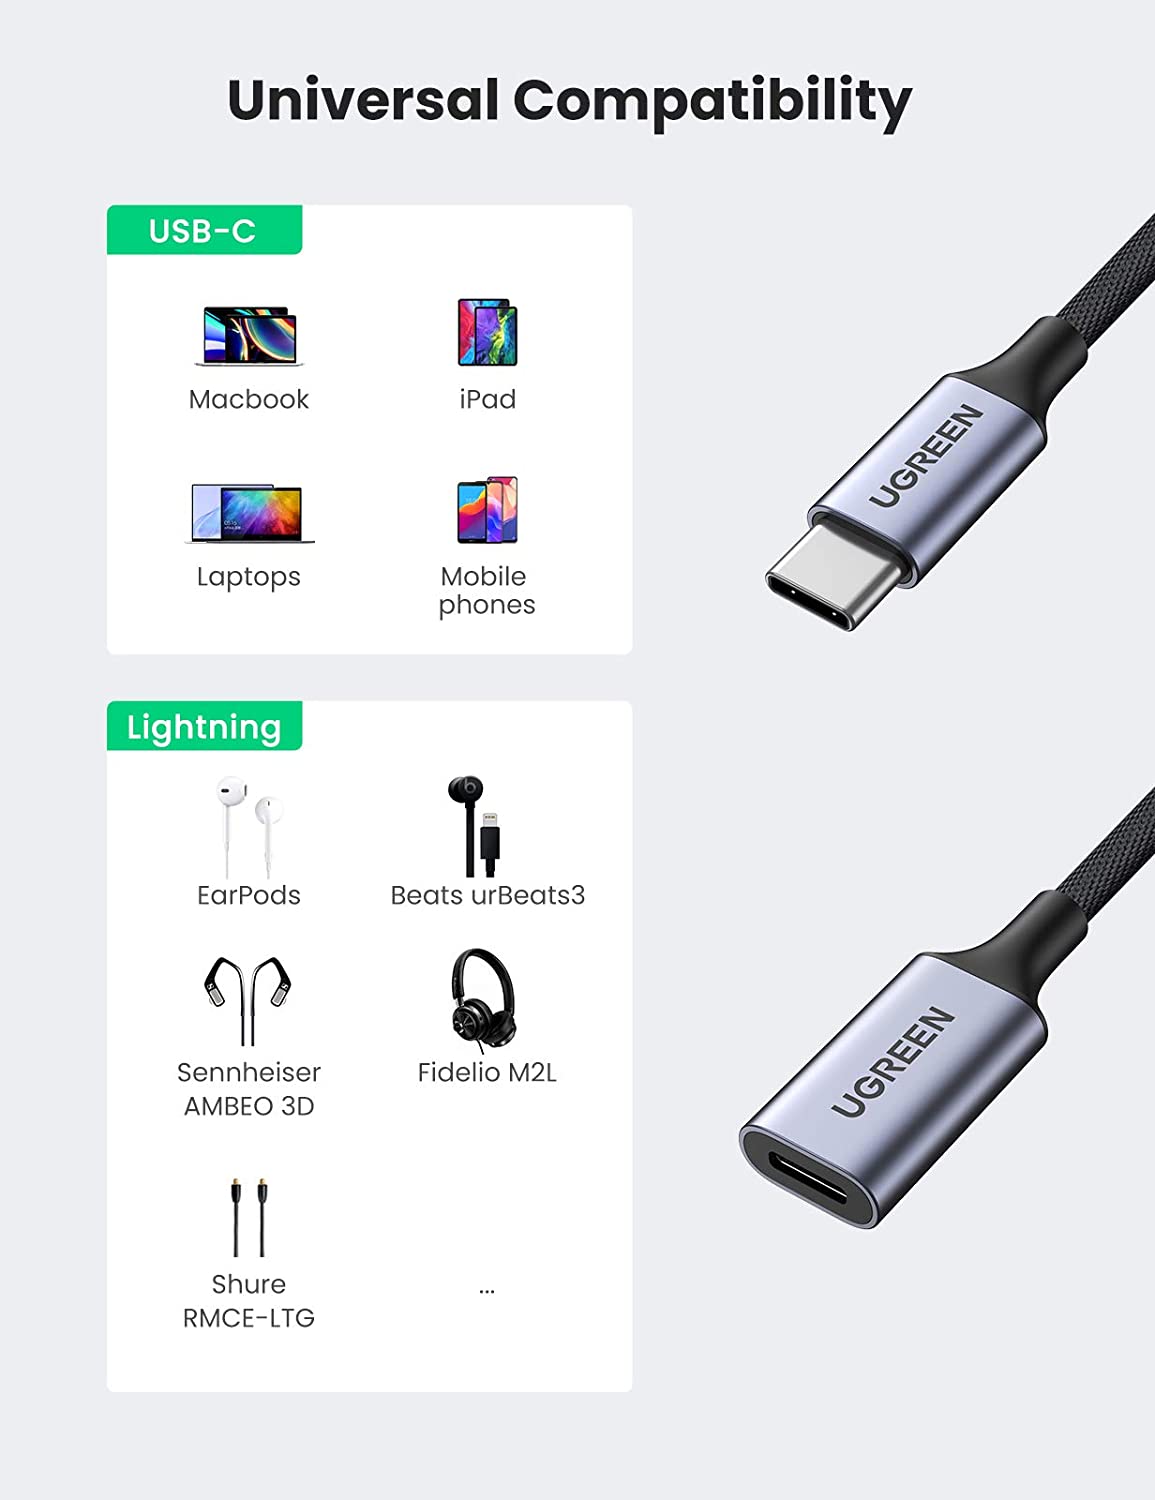 UGREEN Adaptateur USB C Jack 3.5mm Adaptateur Ec…